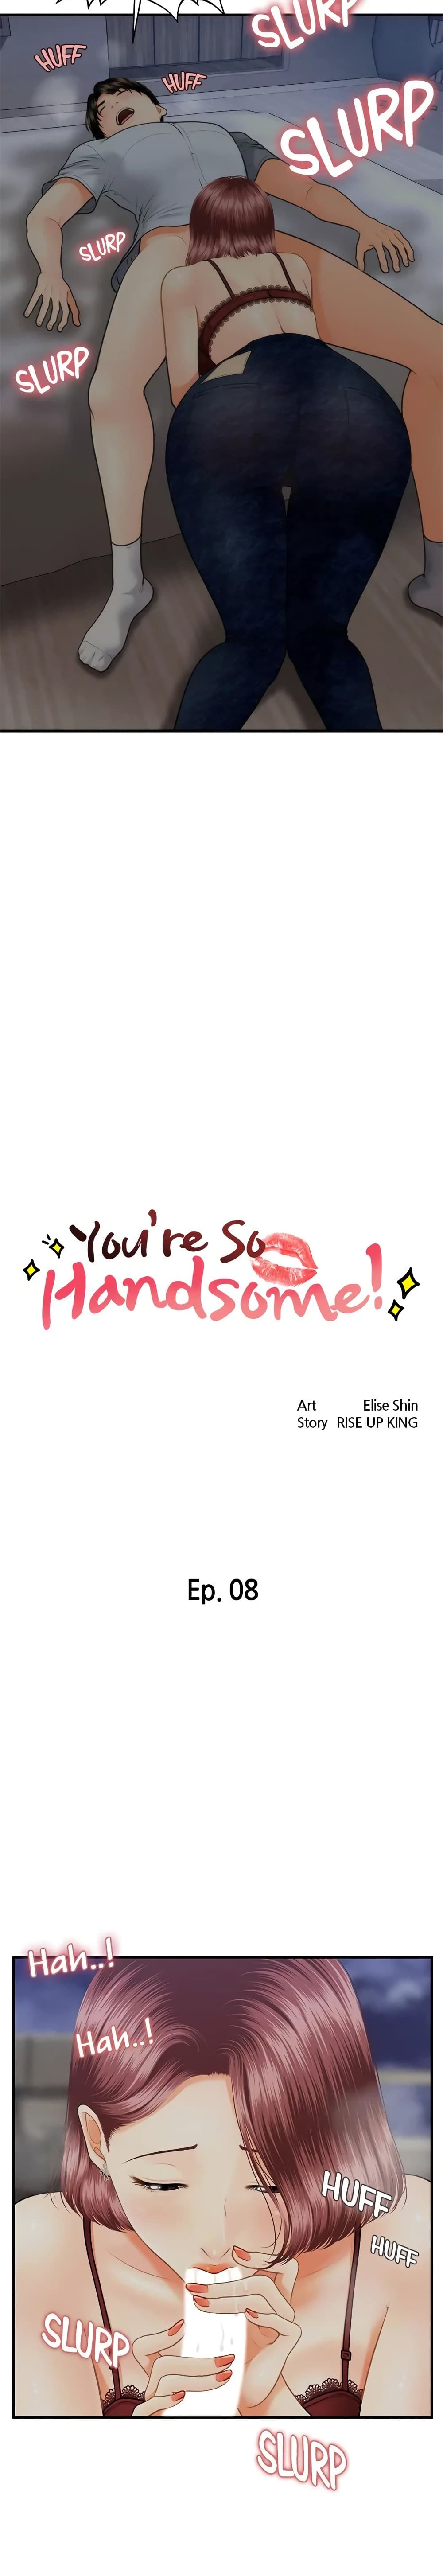 Hey, Handsome 8-8